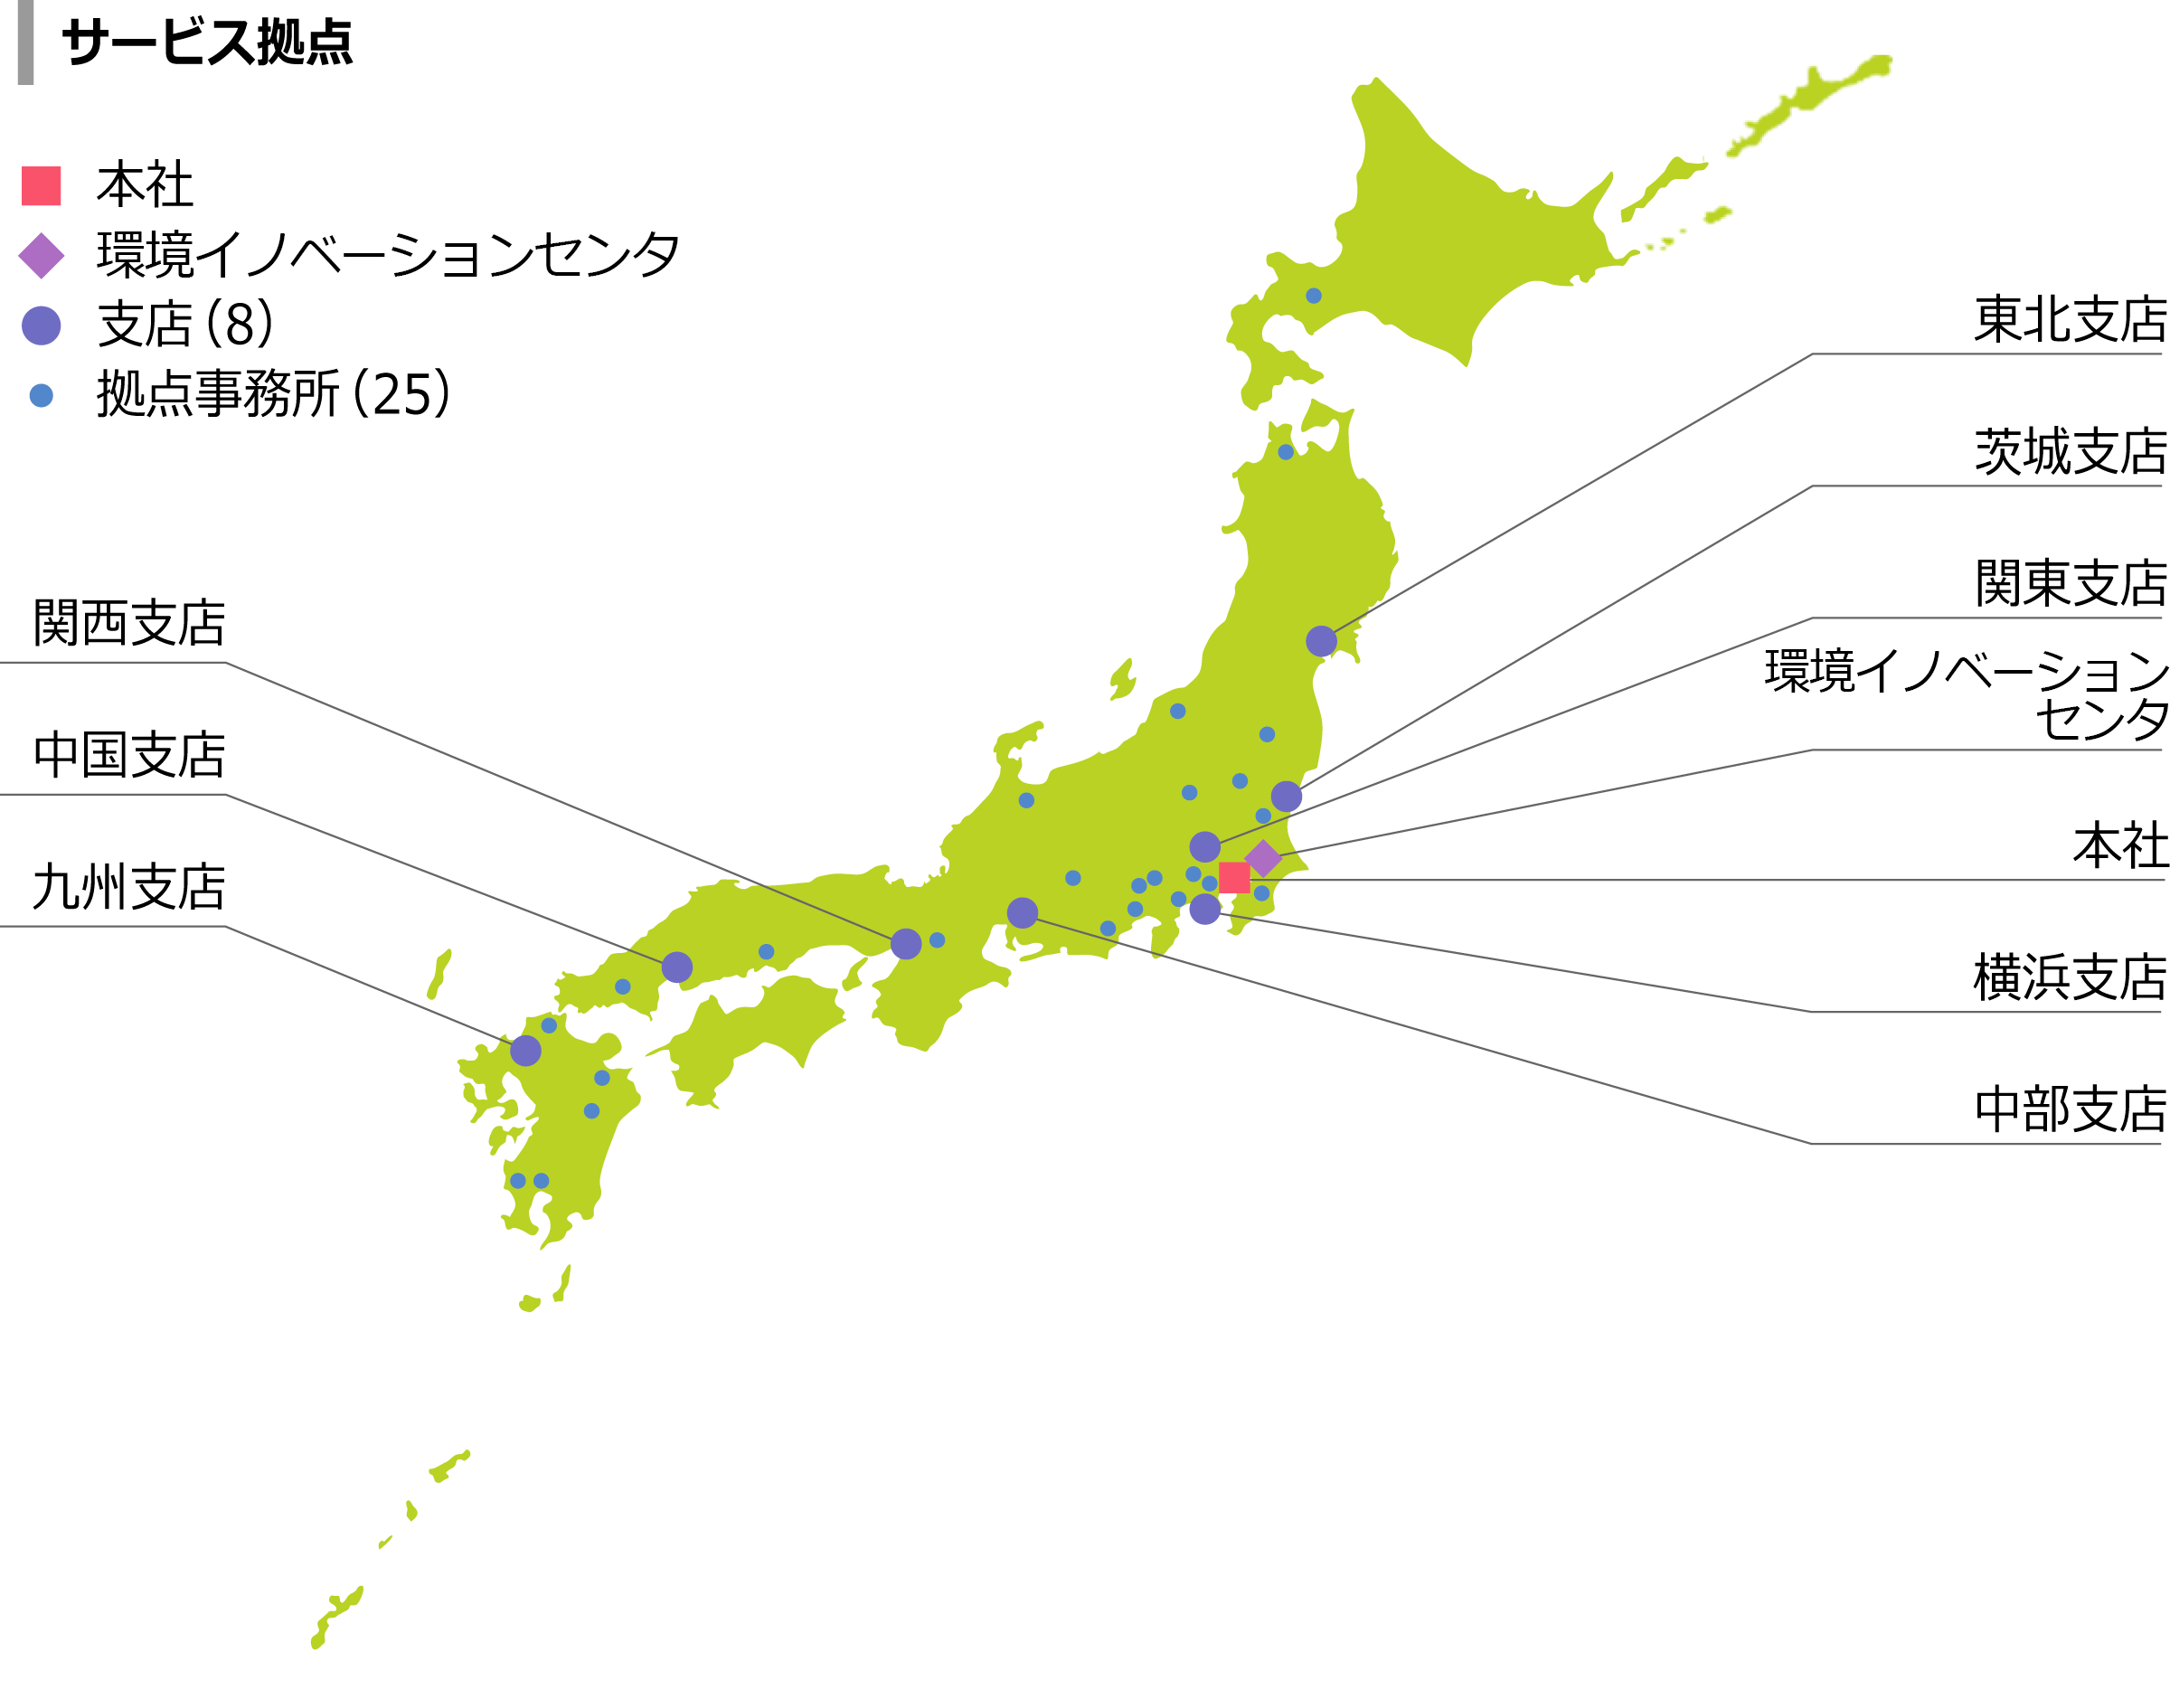 サービス拠点を記載した日本地図